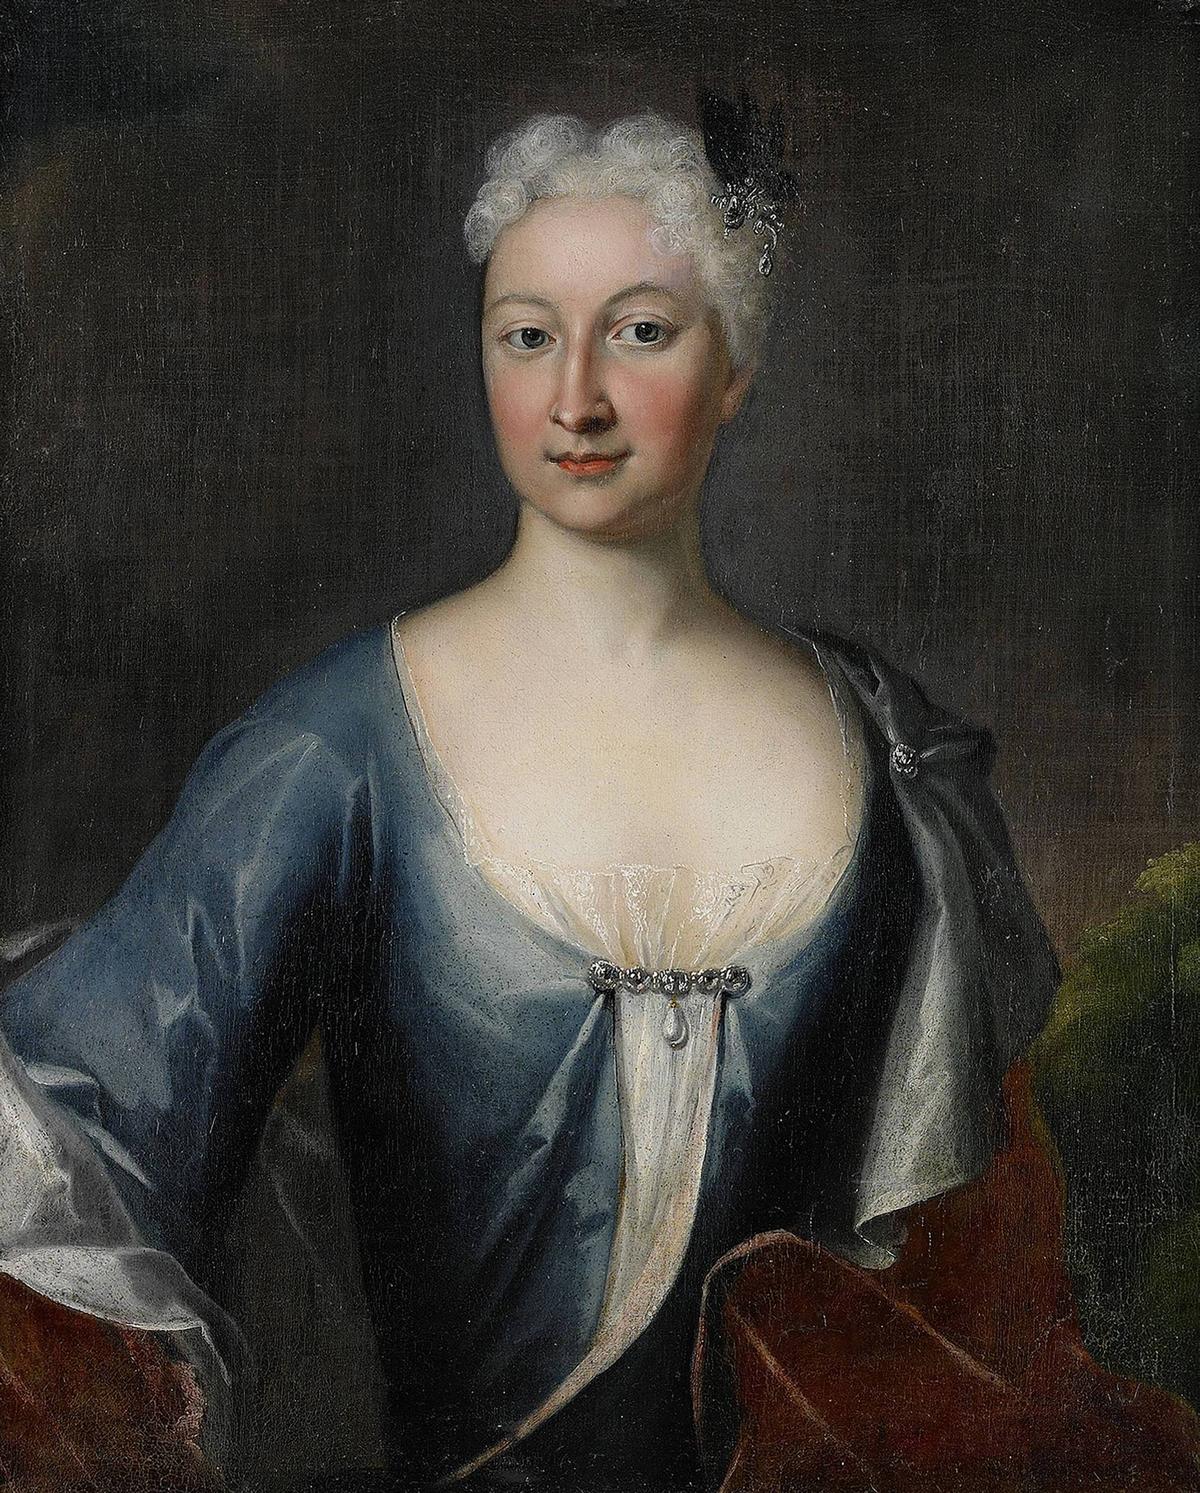 Porträtt av en kvinna i pudrad 1700-talsfrisyr, blå klänning och med vänlig blick.